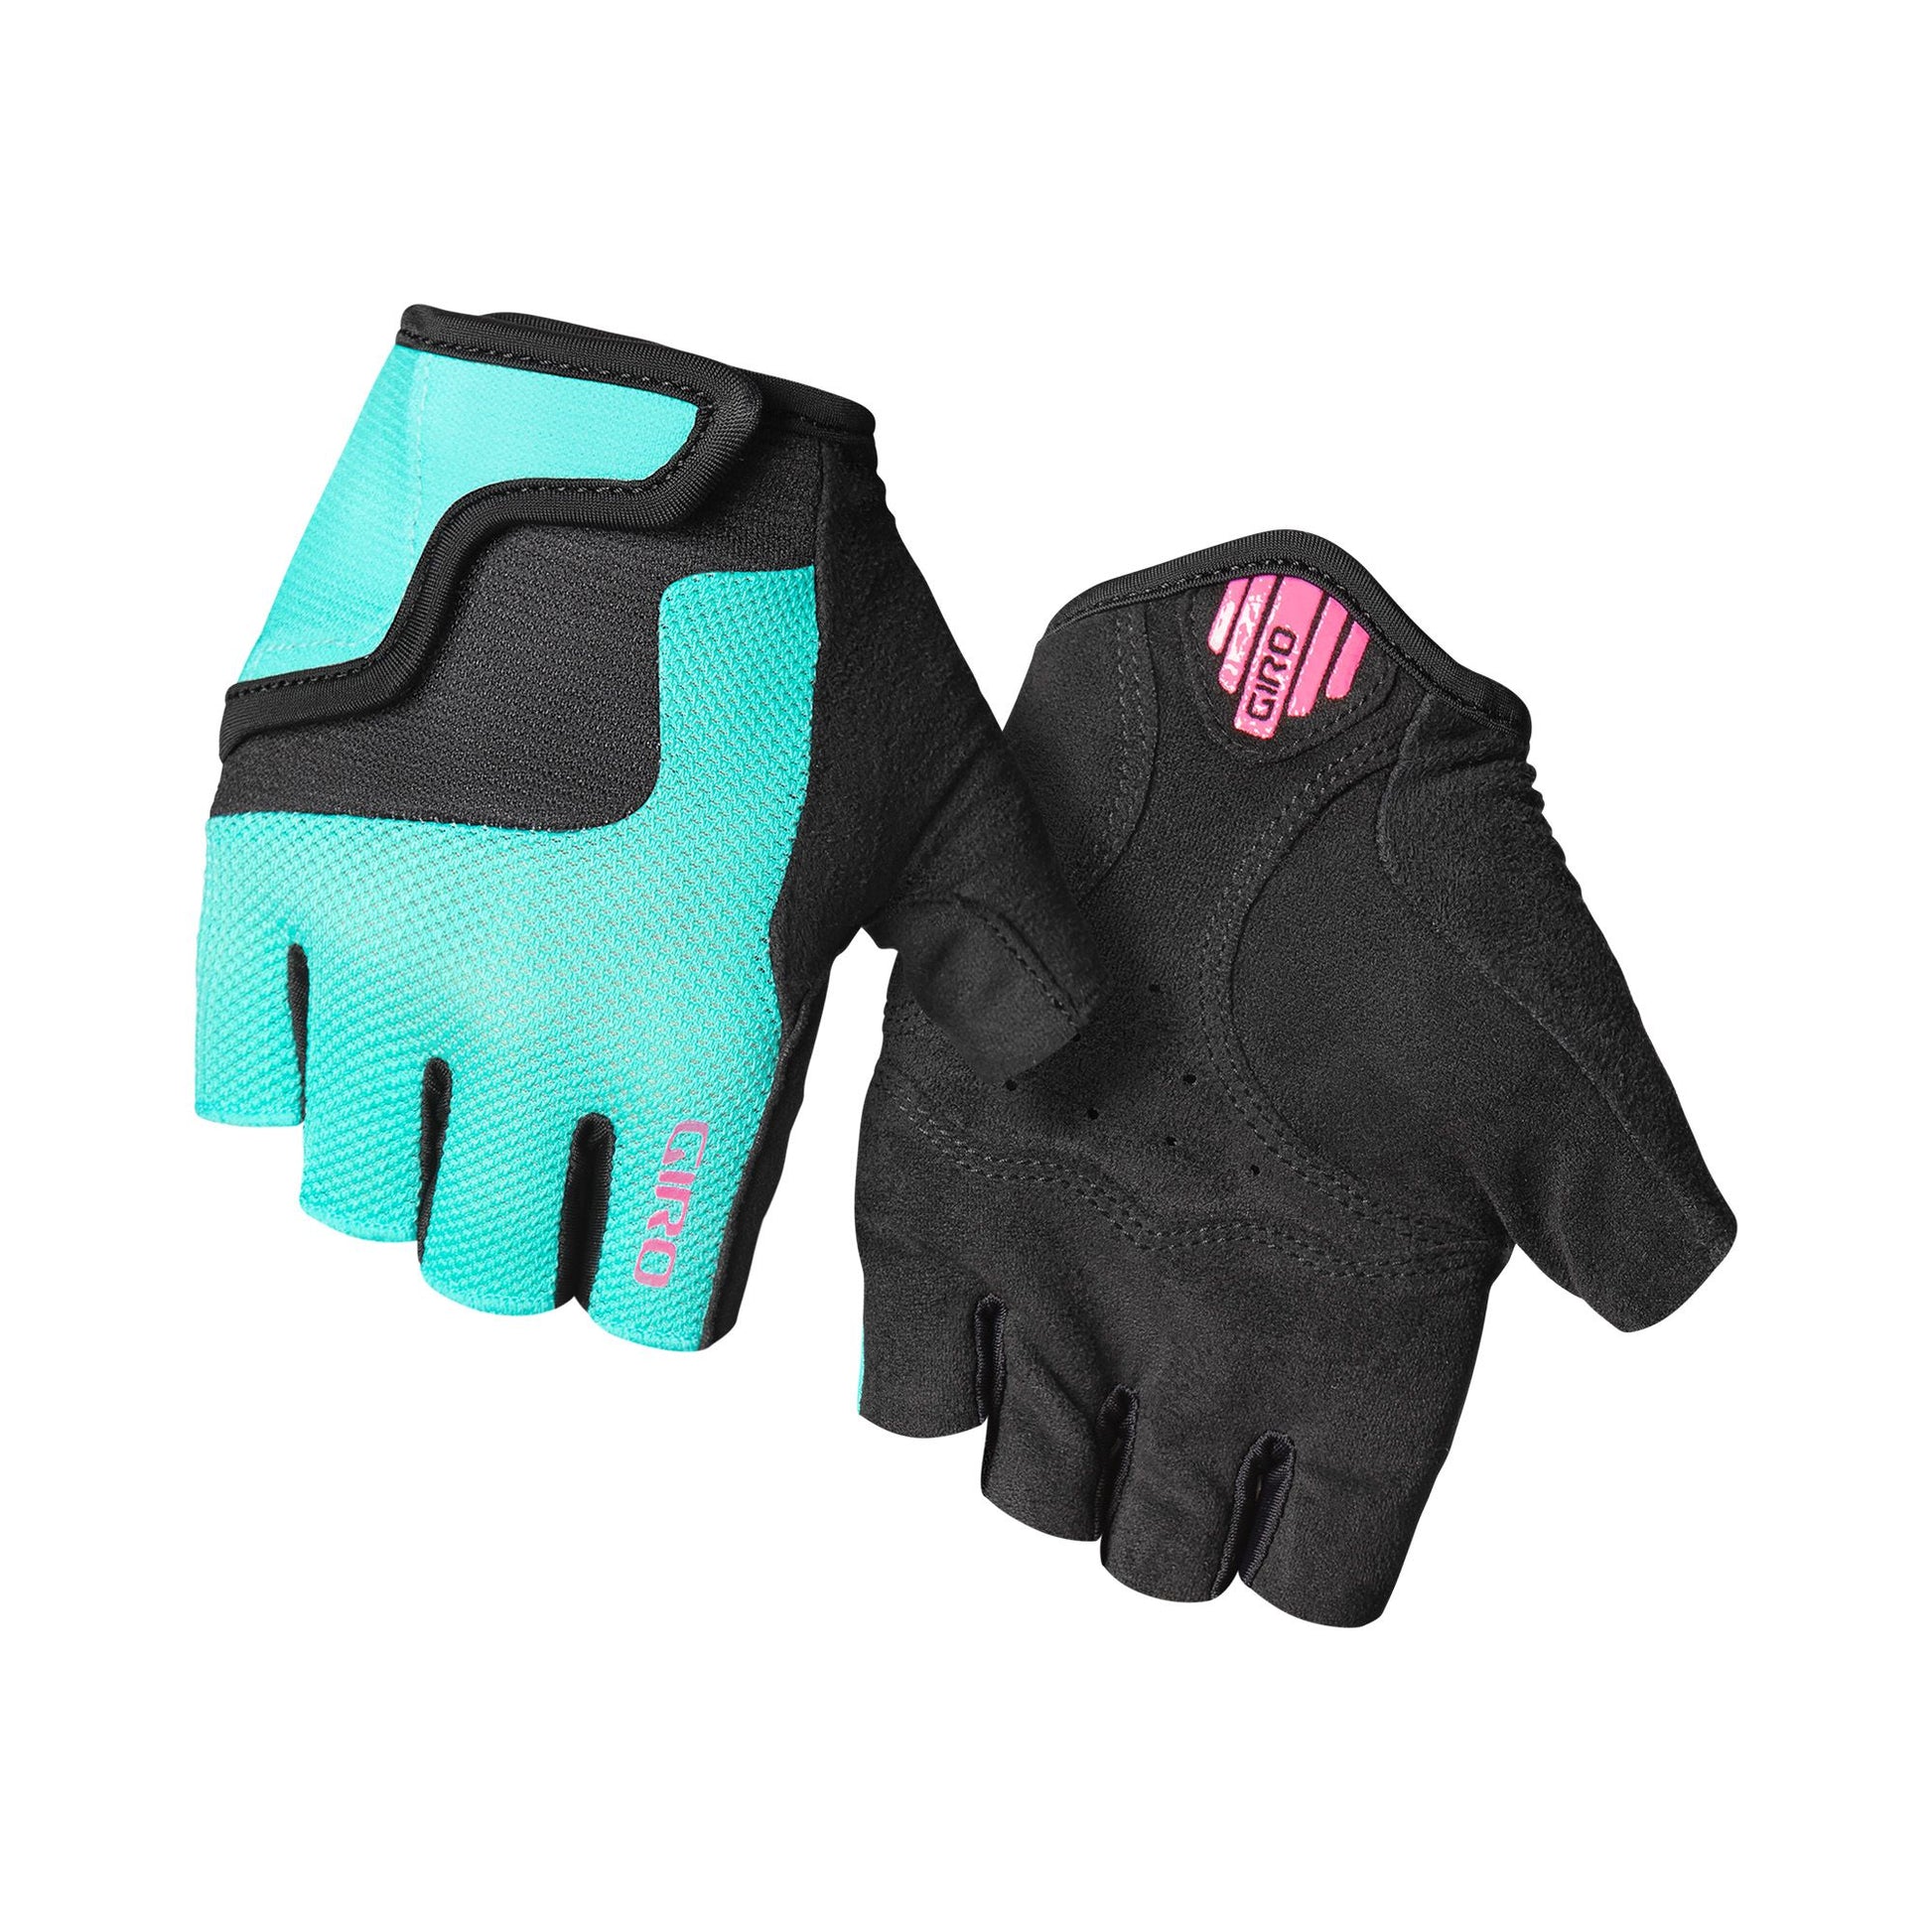 Giro Youth Bravo Jr Glove Screaming Teal Neon Pink Bike Gloves